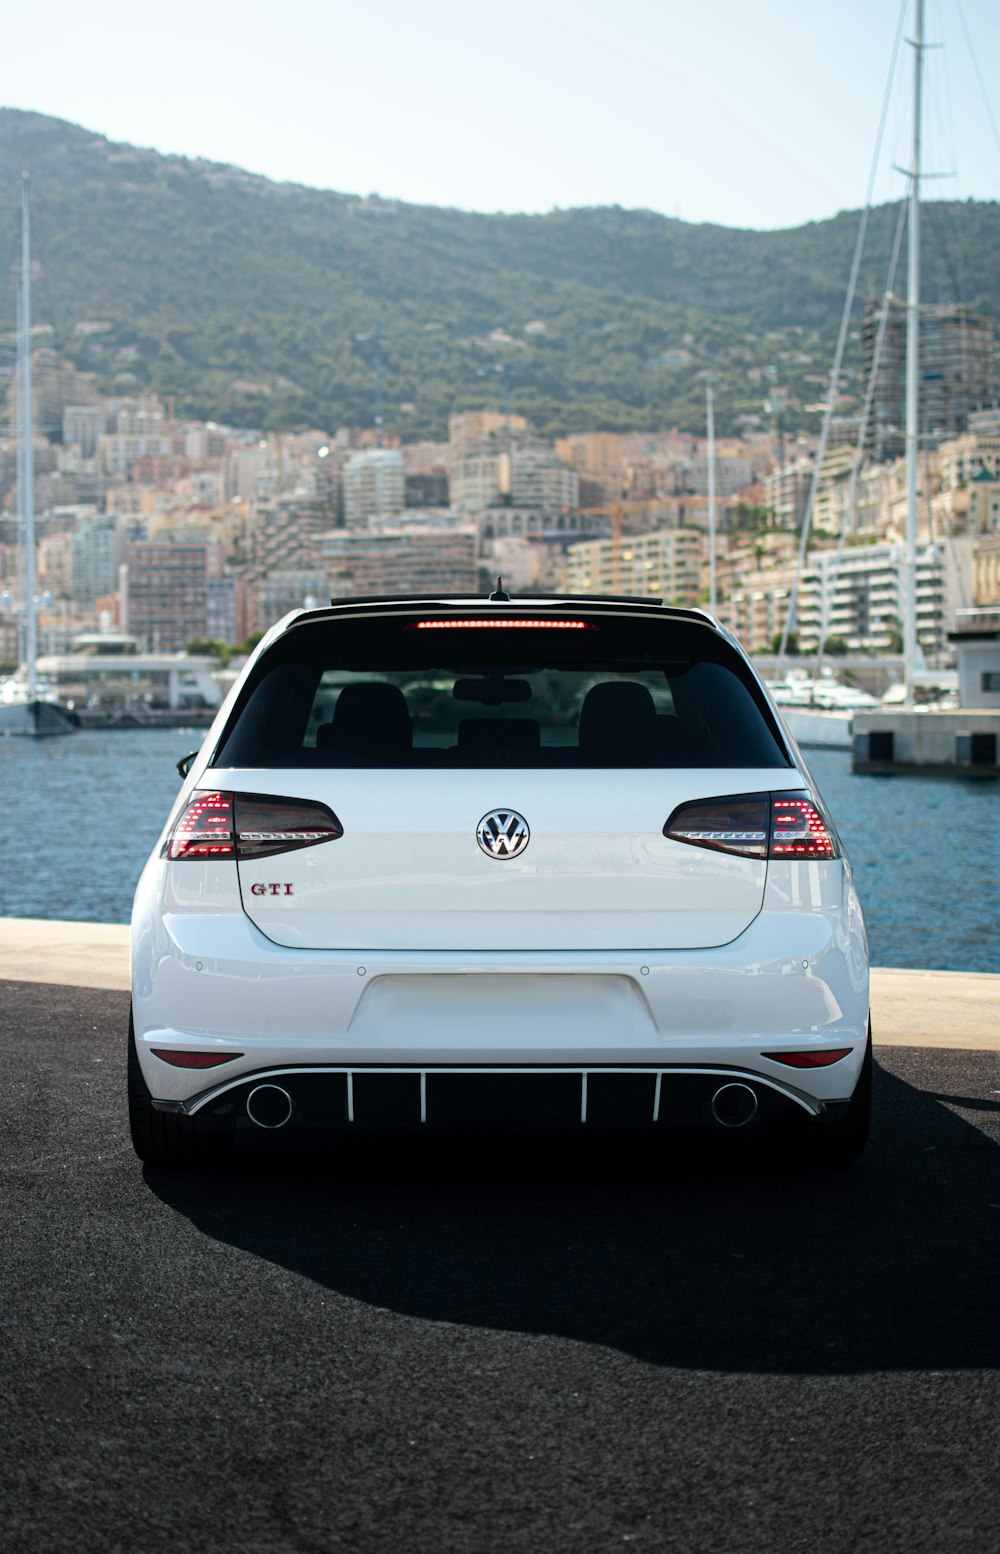 Weißes Volkswagen Auto tagsüber unterwegs